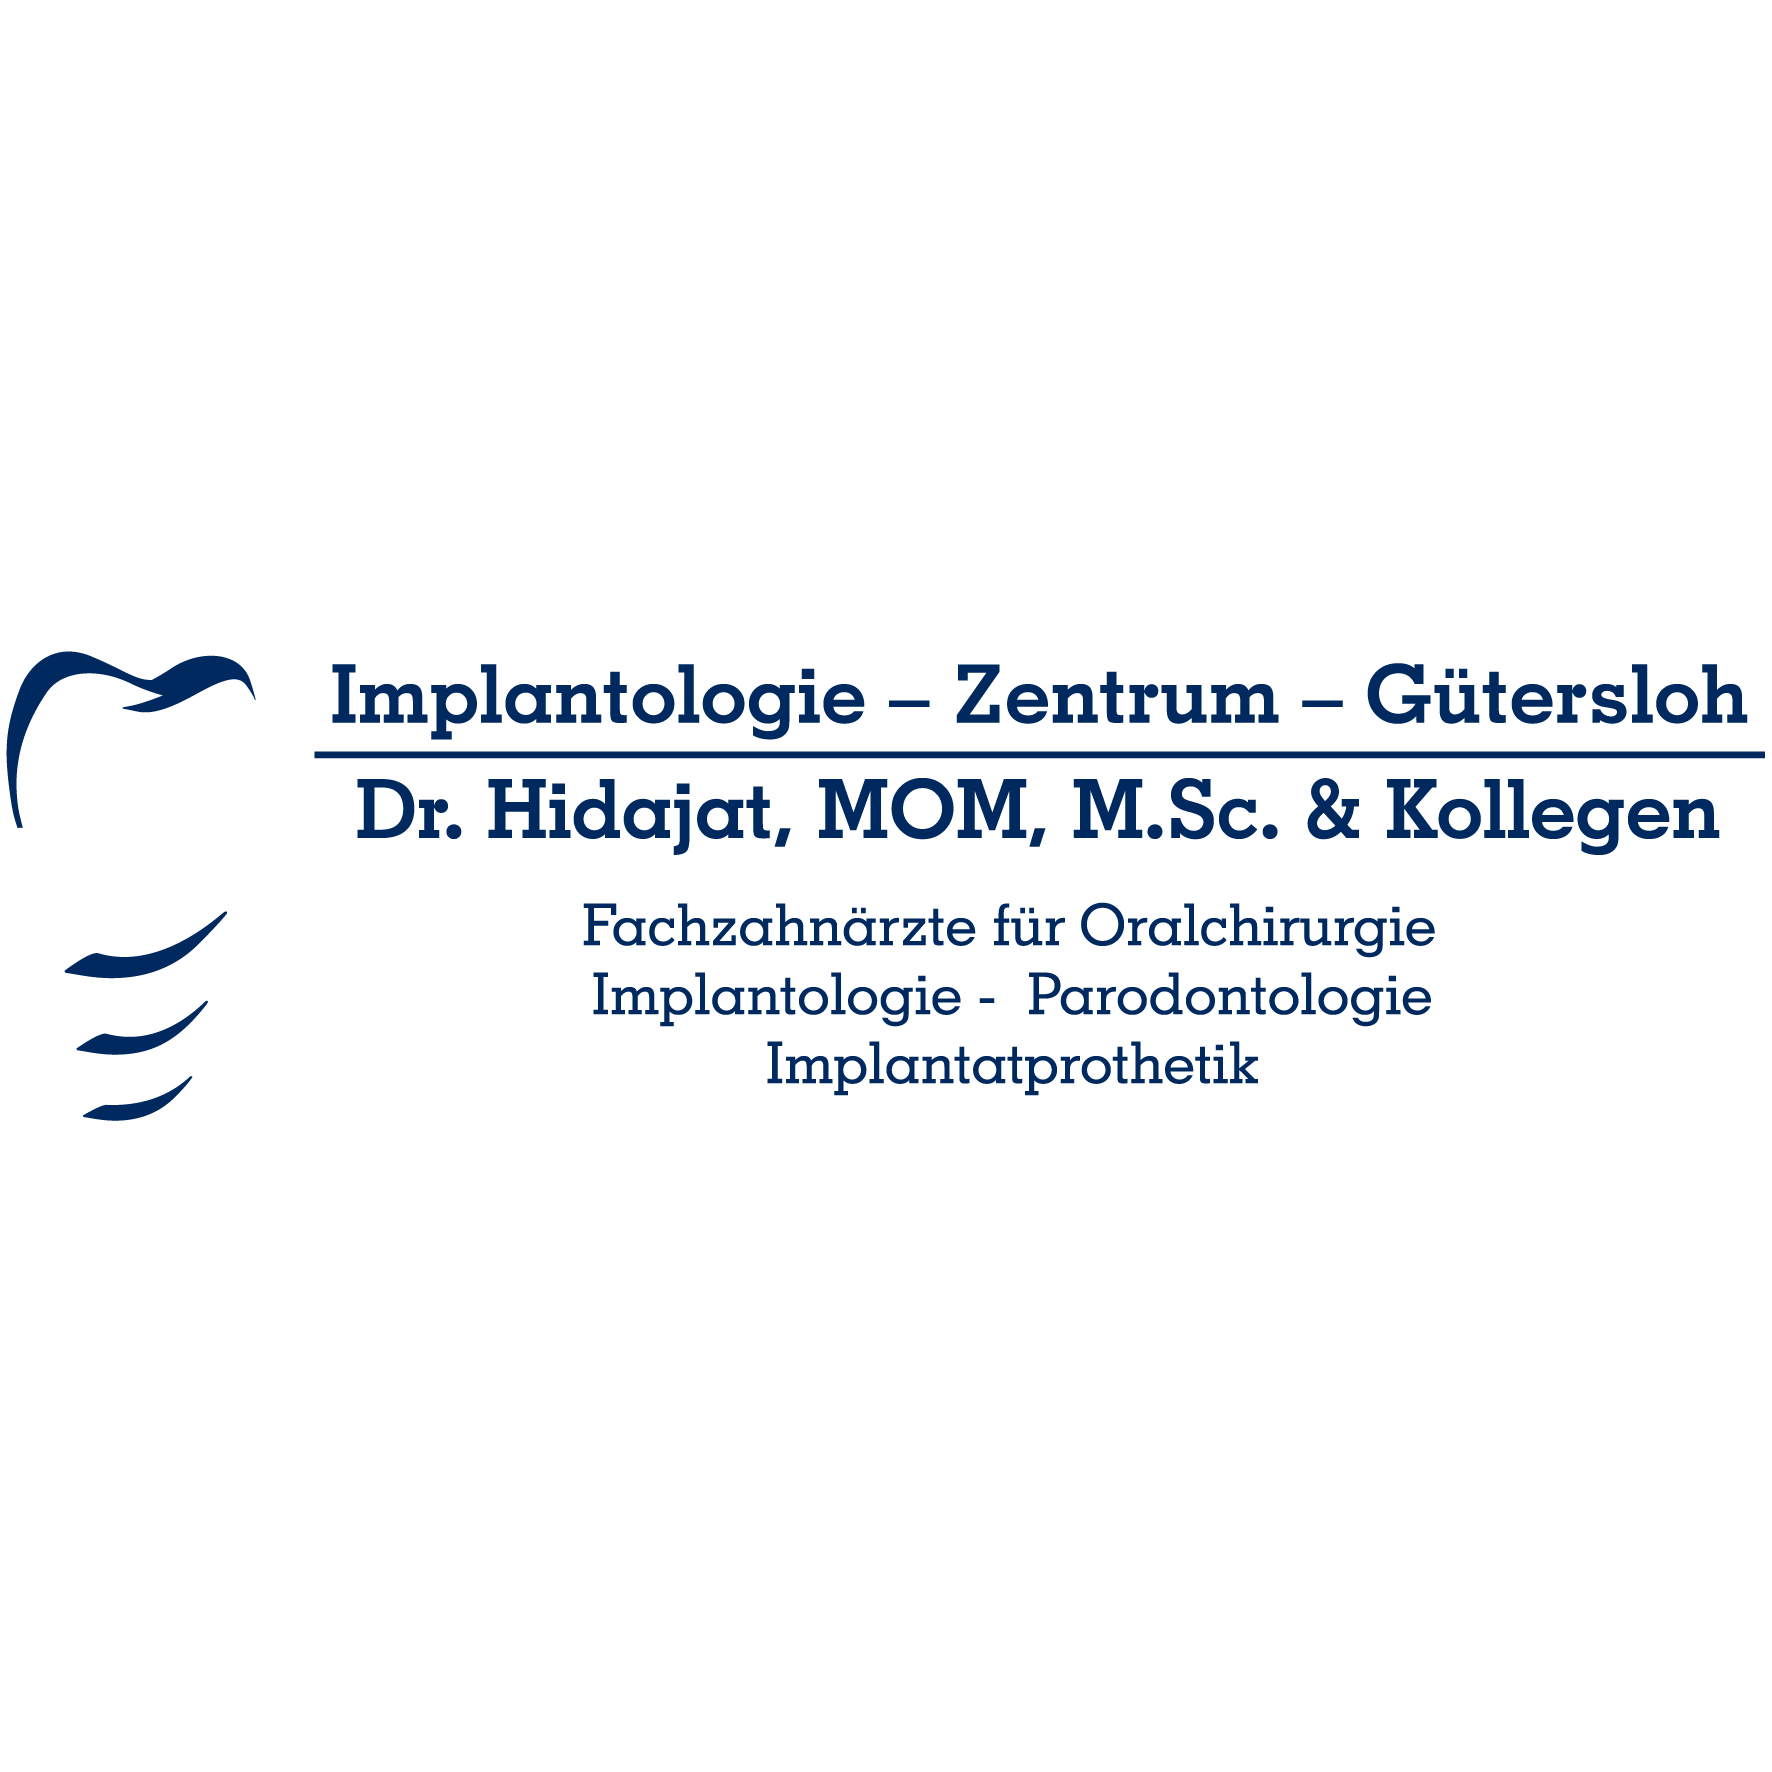 Logo Implantologie - Zentrum - Gütersloh I Dr. Hidajat & Kollegen